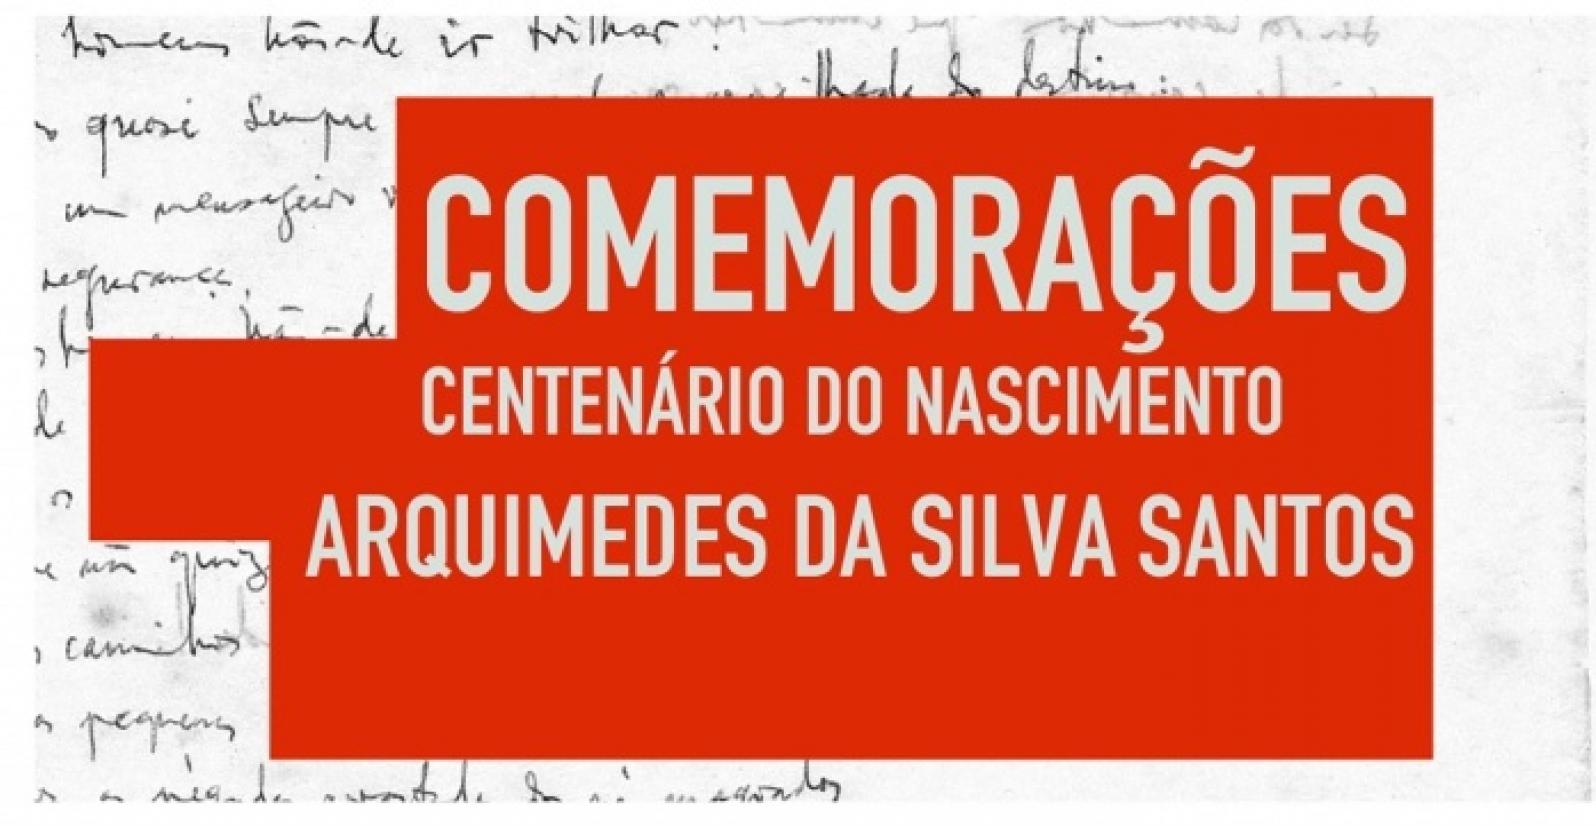 Comemorações do centenário do nascimento de Arquimedes da Silva Santos